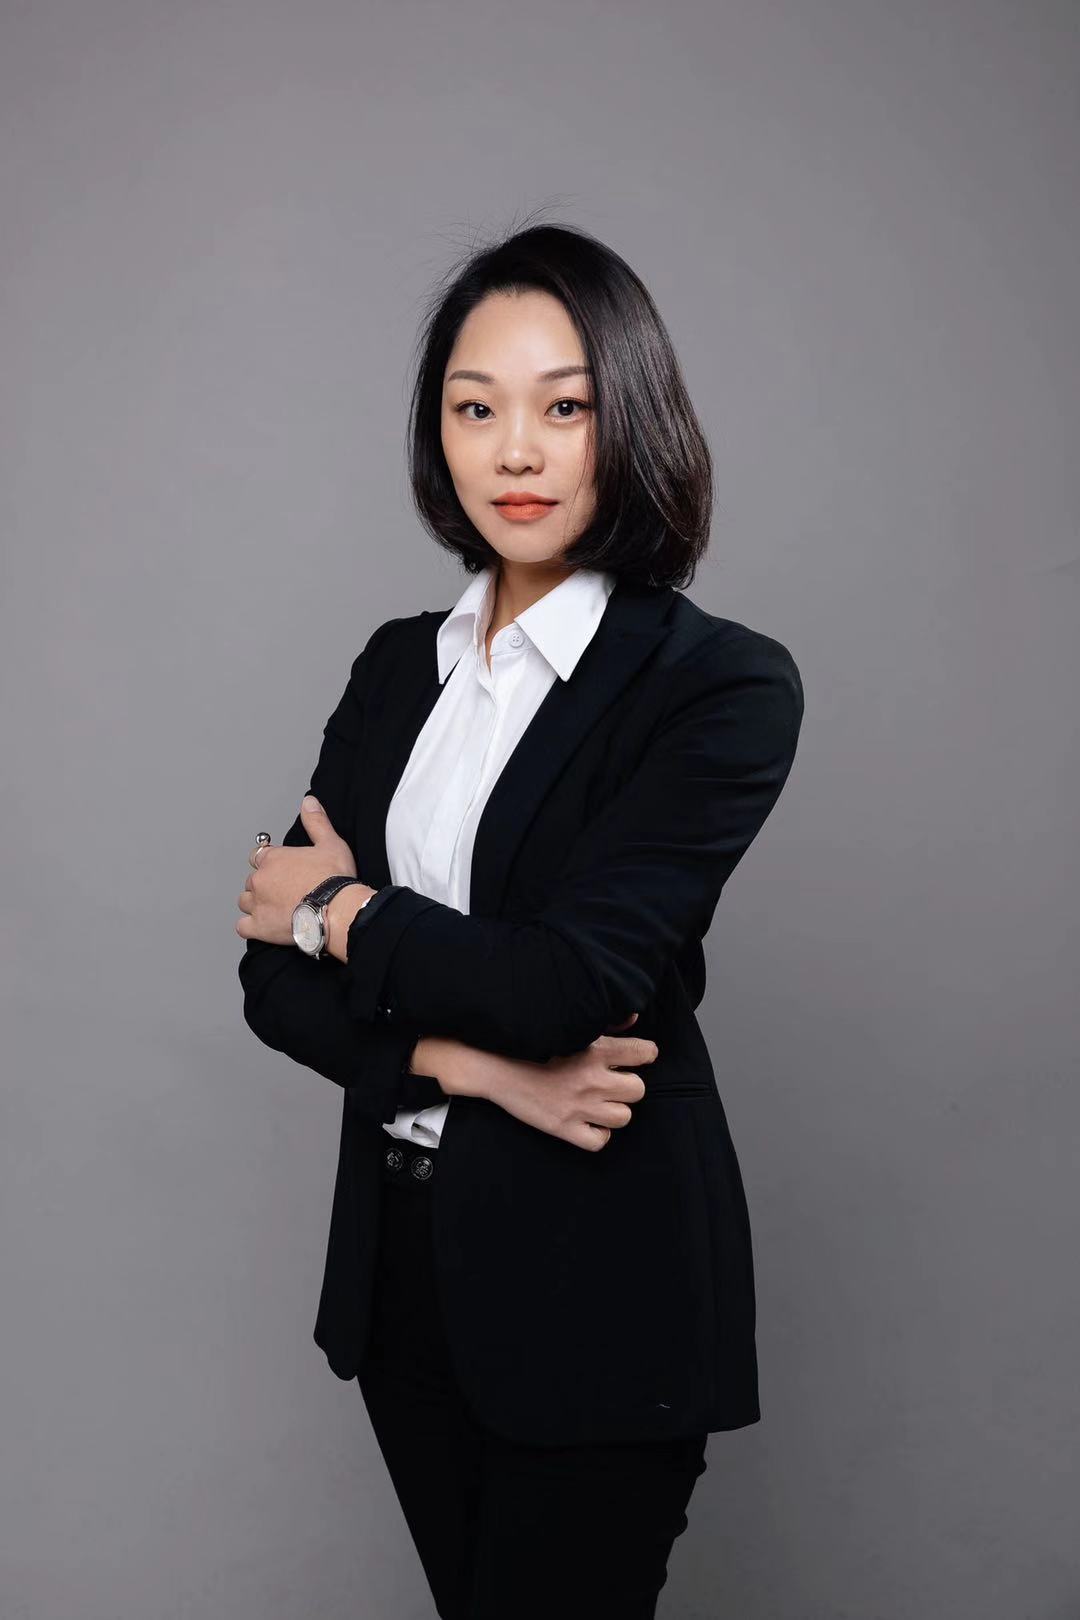 众维律师获聘担任柳州市广告协会法律顾问